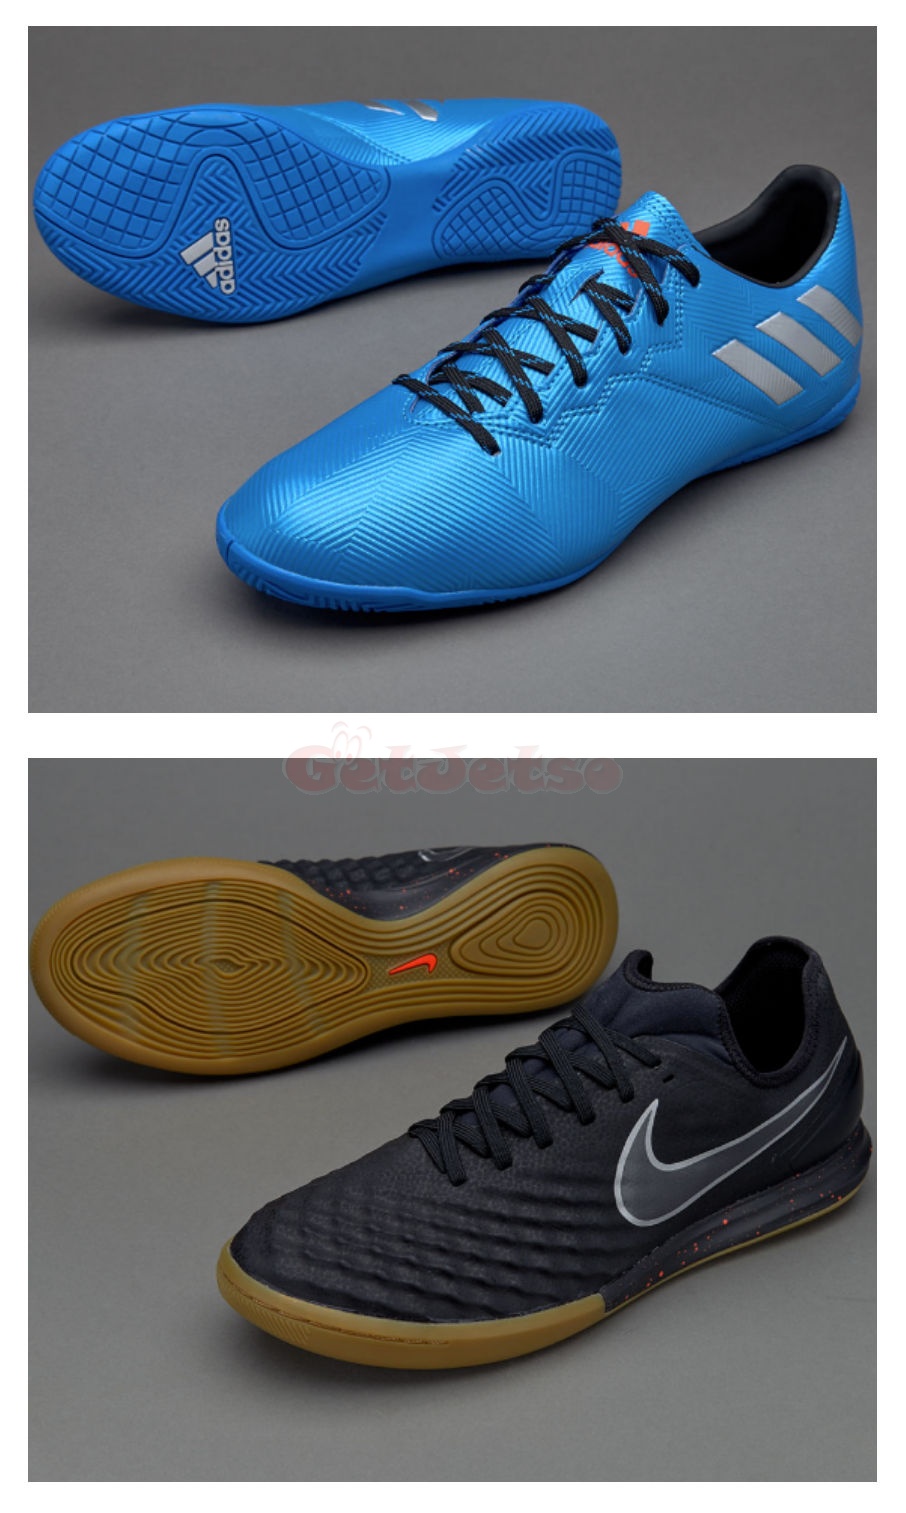 足球鞋的種類圖片2